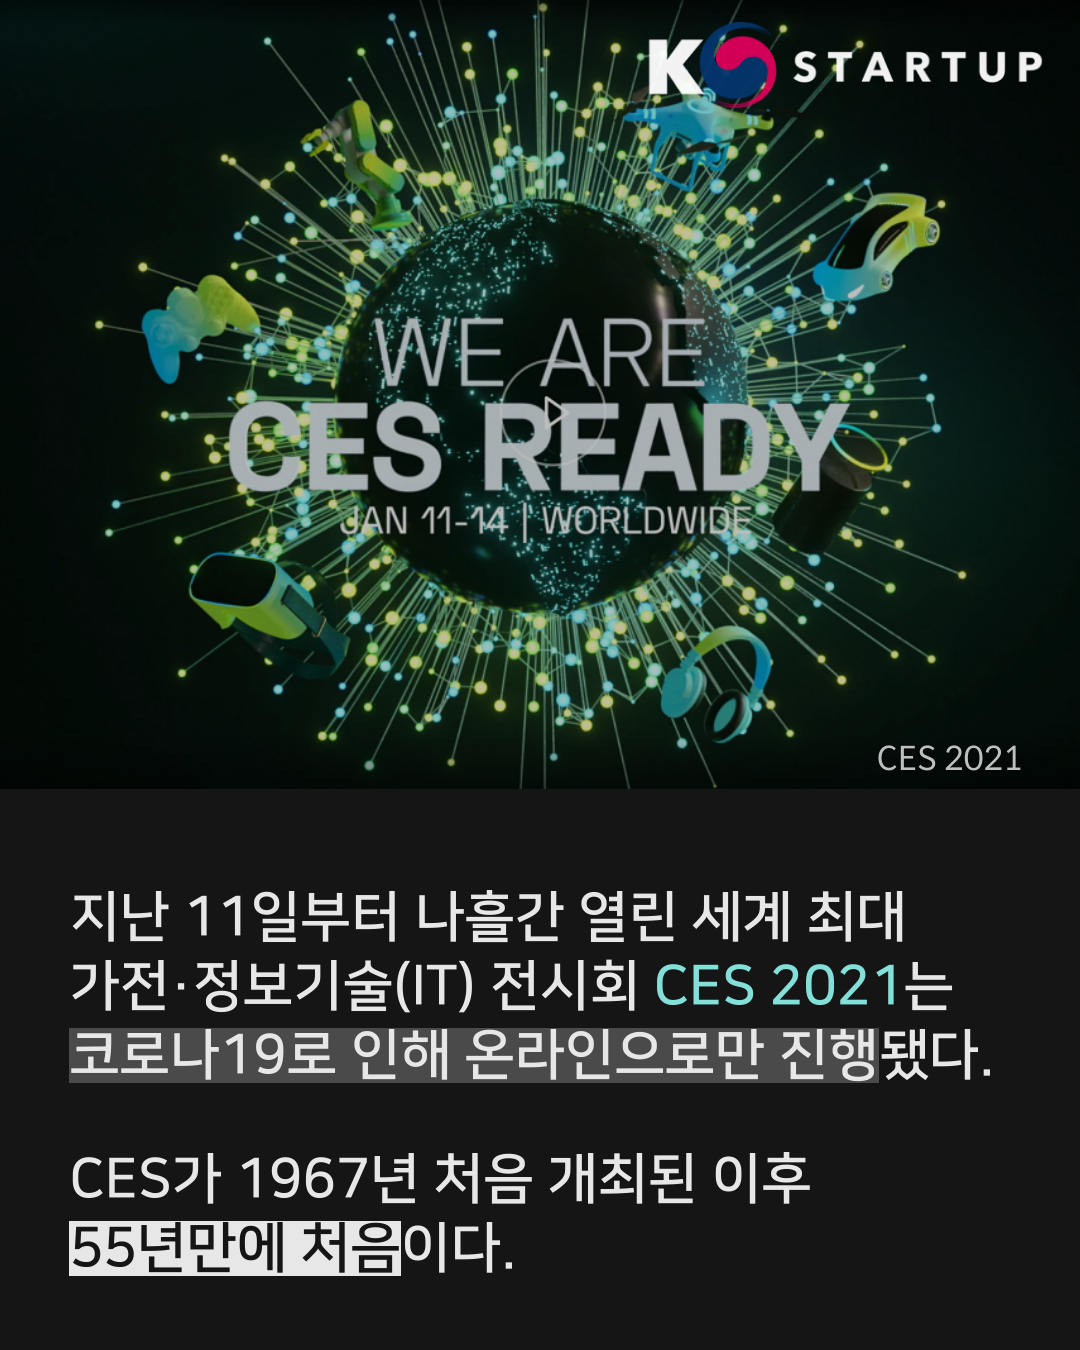 지난 11일부터 나흘간 열린 세계 최대 가전·정보기술(IT) 전시회 'CES 2021'는 코로나19로 인해 온라인으로만 진행됐다. 
CES가 1967년 시작된 이후 55년만에 처음이다.